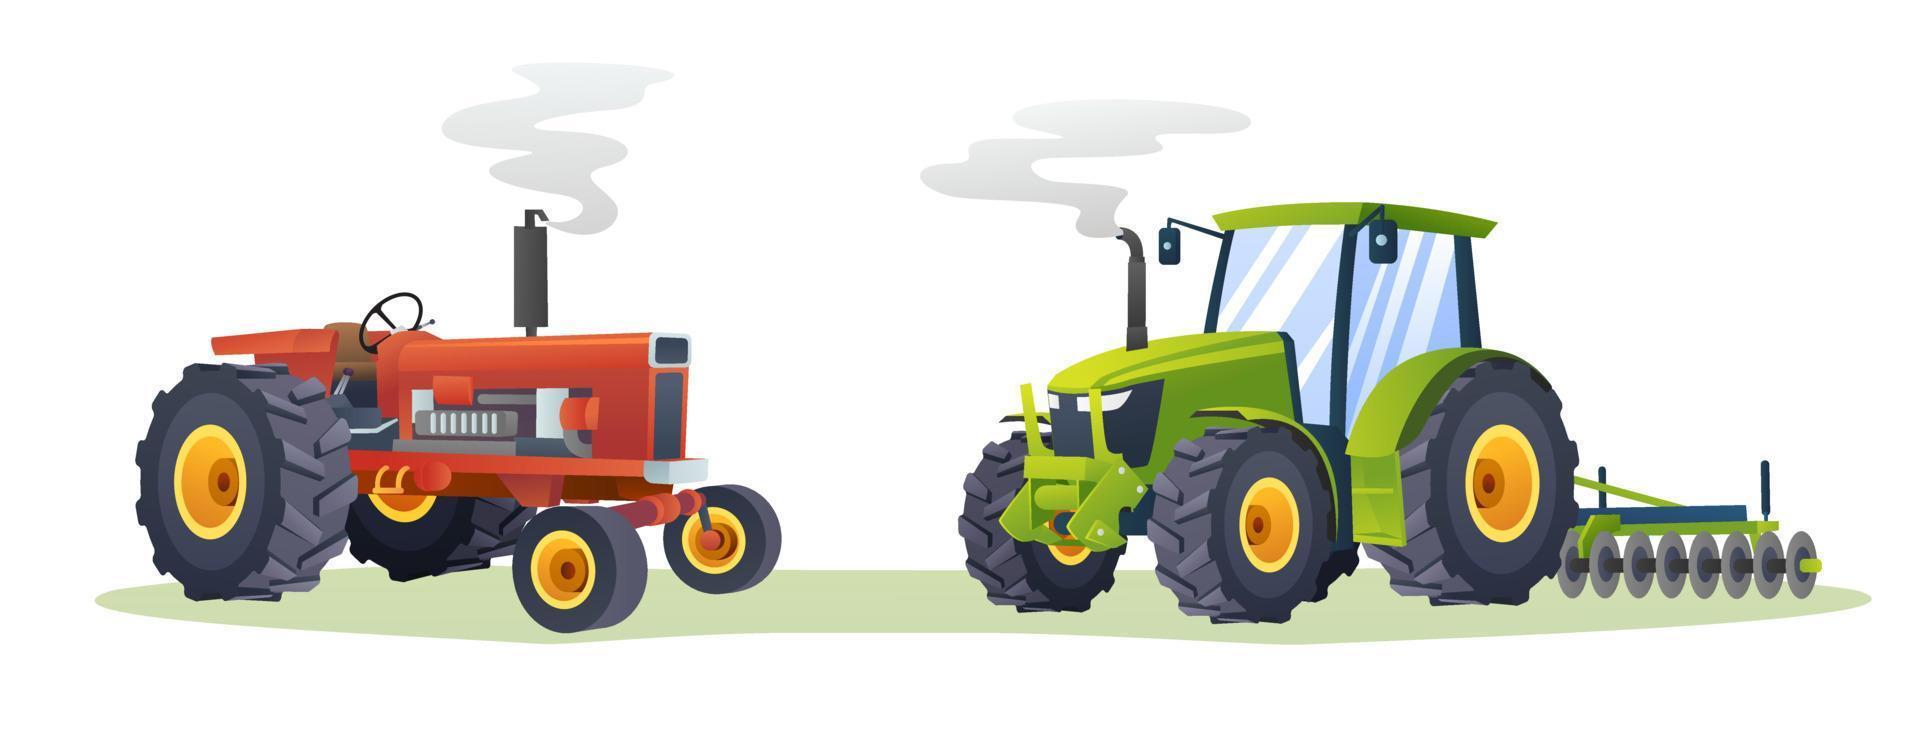 ilustración aislada de la colección de tractores agrícolas vector